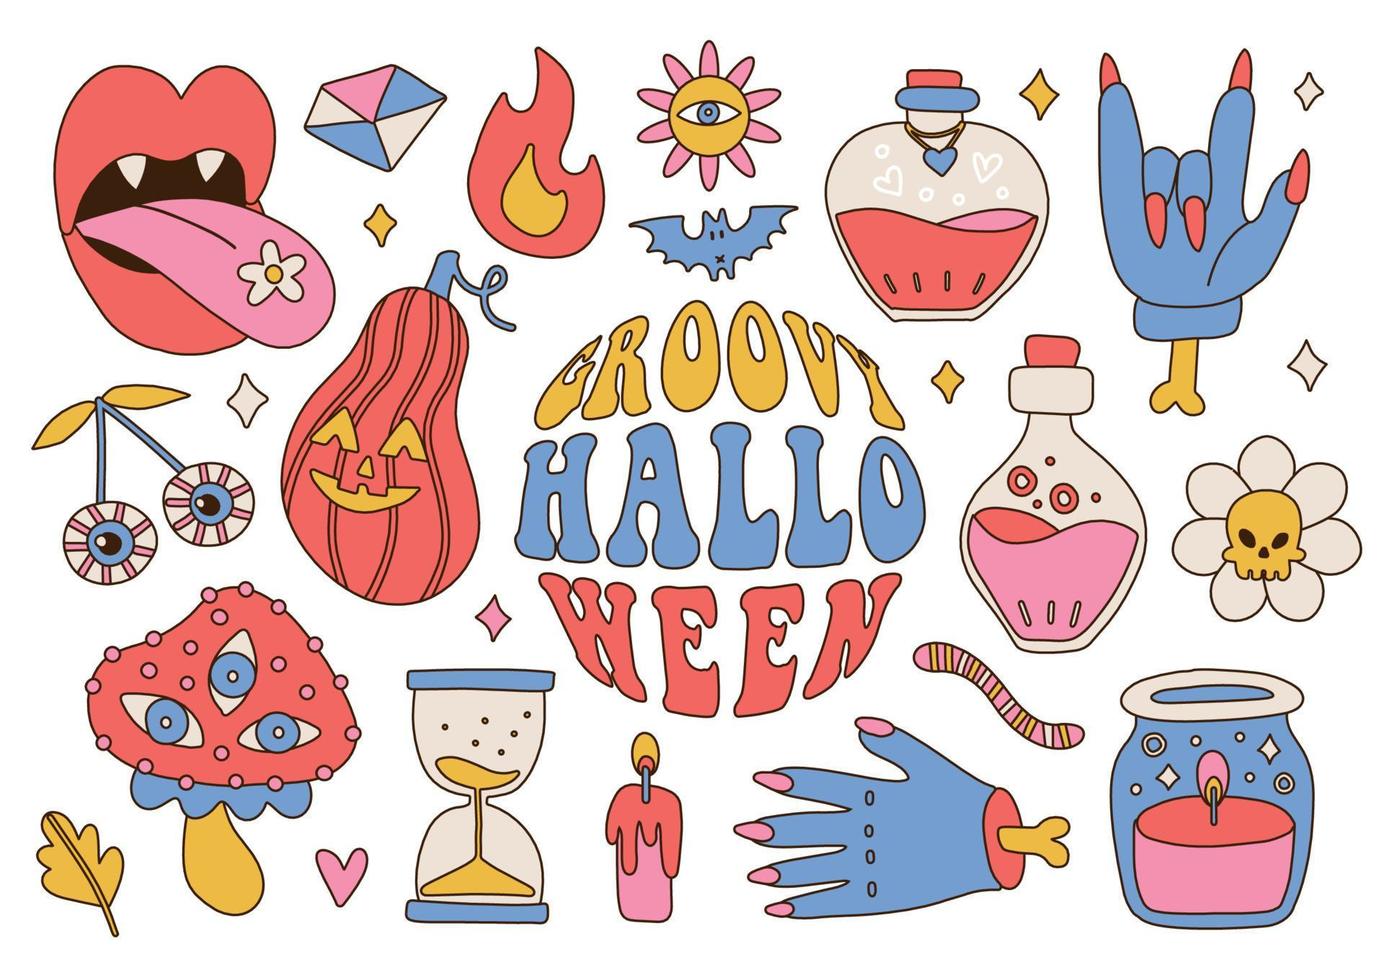 groovy retro jaren 70 halloween groot reeks van spookachtig elementen. psychedelisch eng stickers. hippie stijl vakantie. zombie arm, pompoen, toverdrank, paddestoel, knuppel, madeliefje. vector hand- getrokken illustratie.